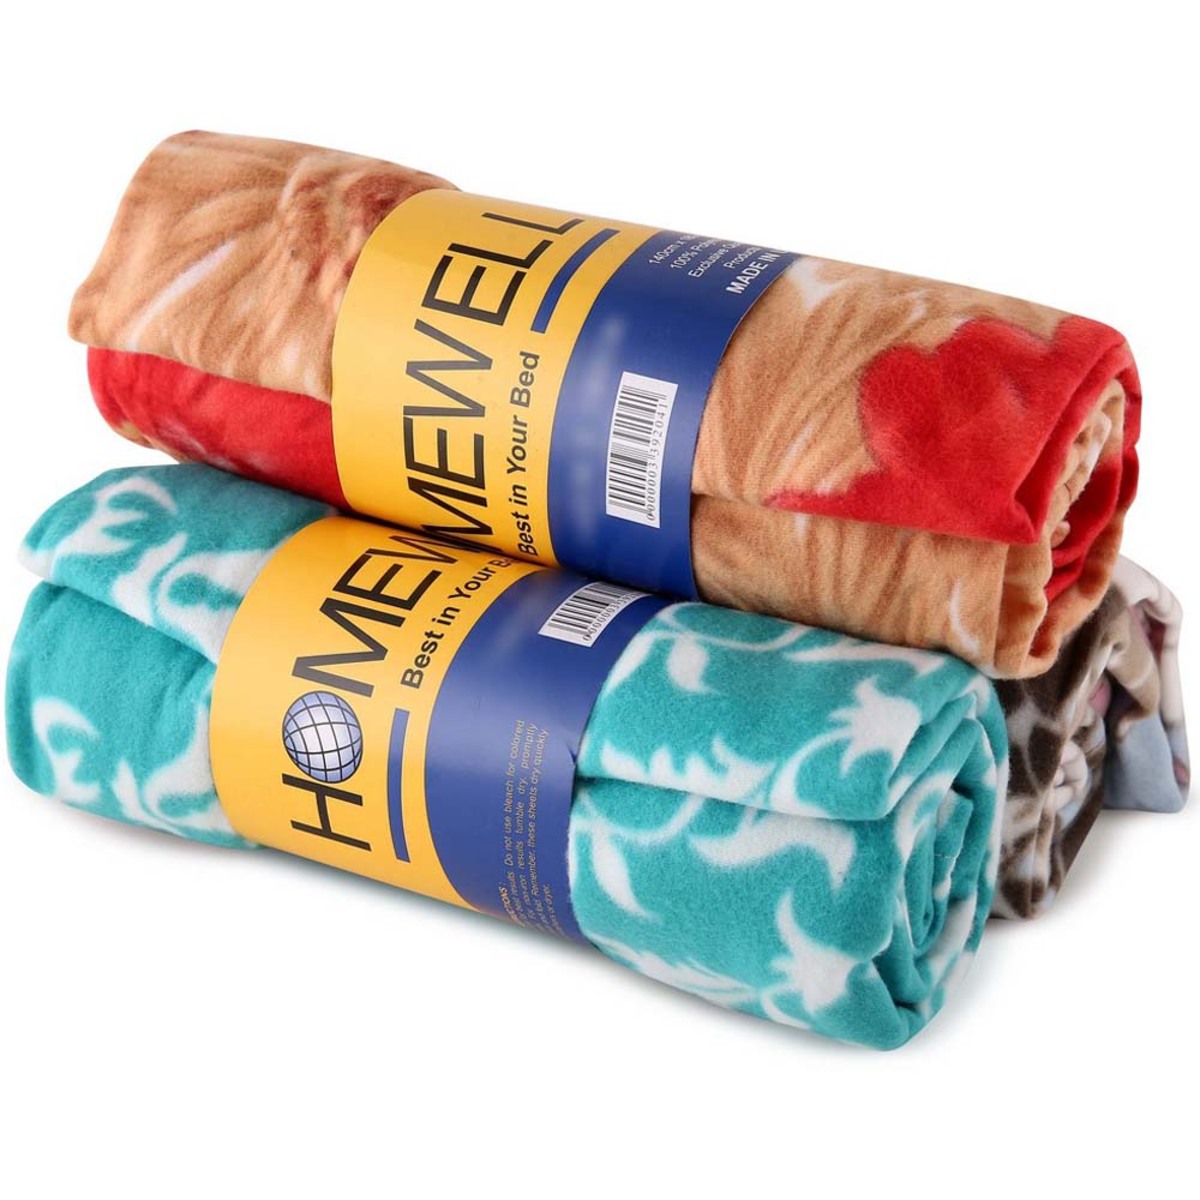 Homewell Fleece Blanket Double 200x220cm 1PC